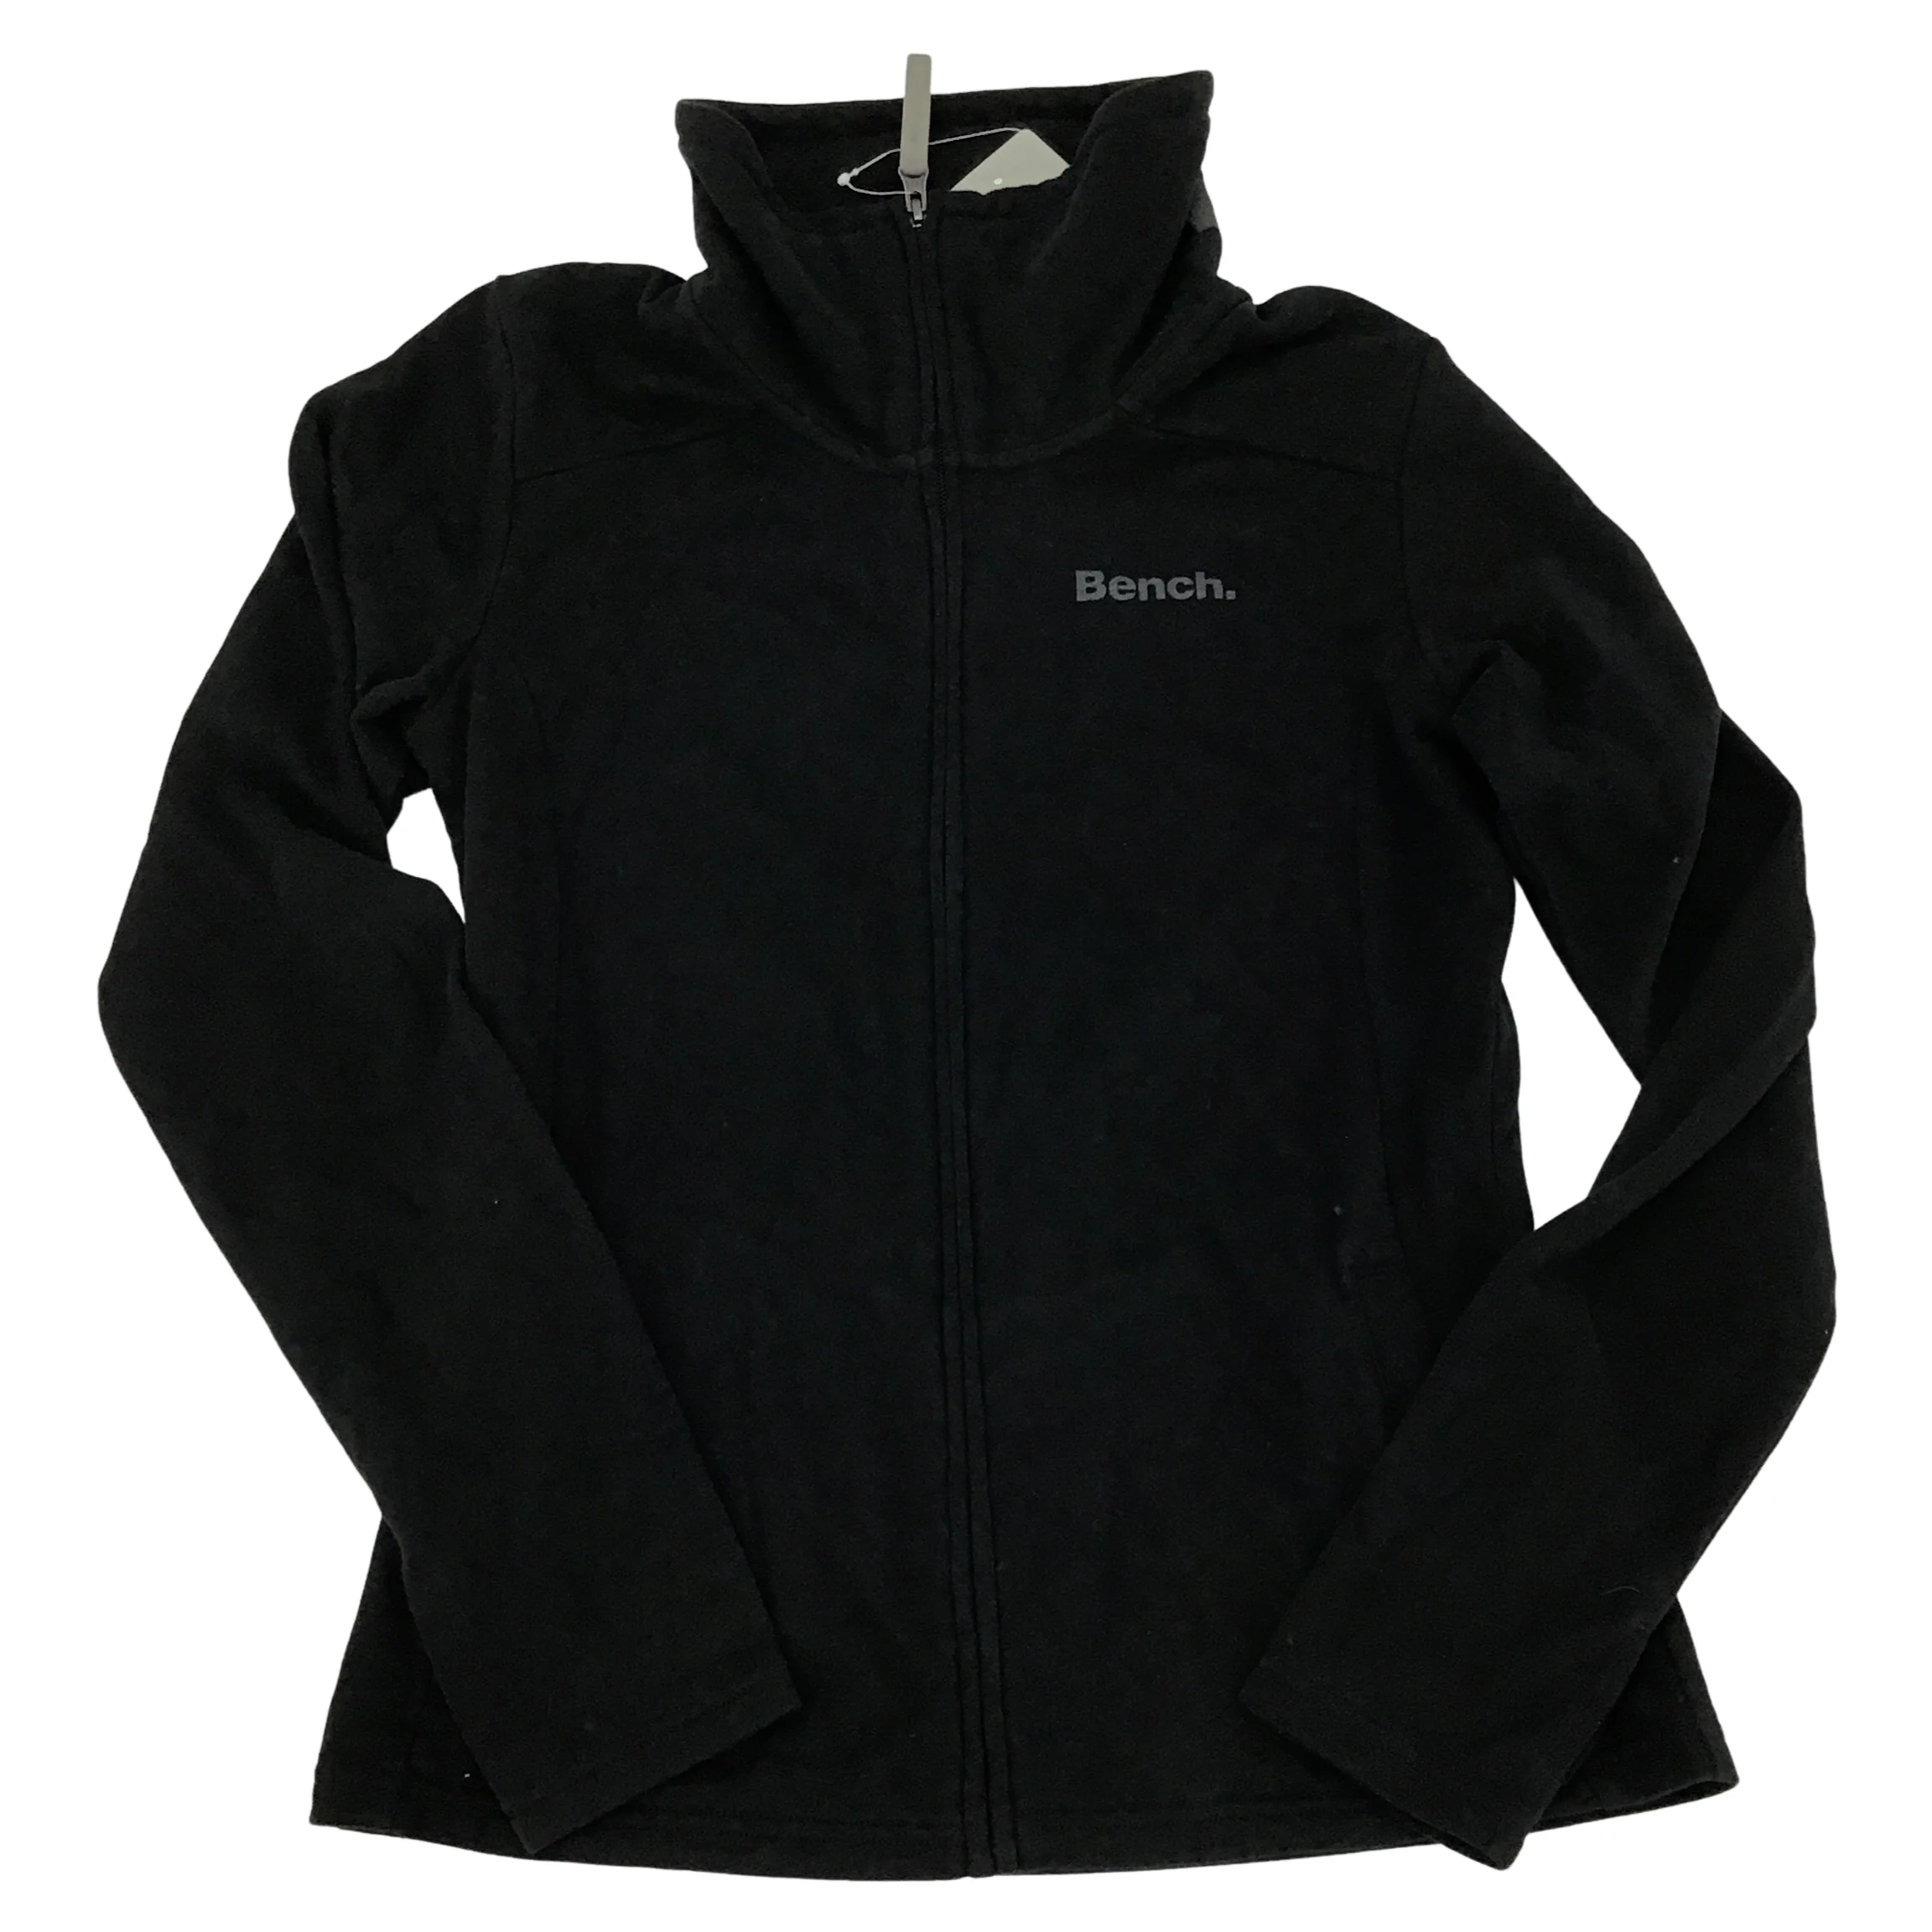 Bench Women's Zip-Up Sweatshirt / Black / Lightweight Sweater / Size S